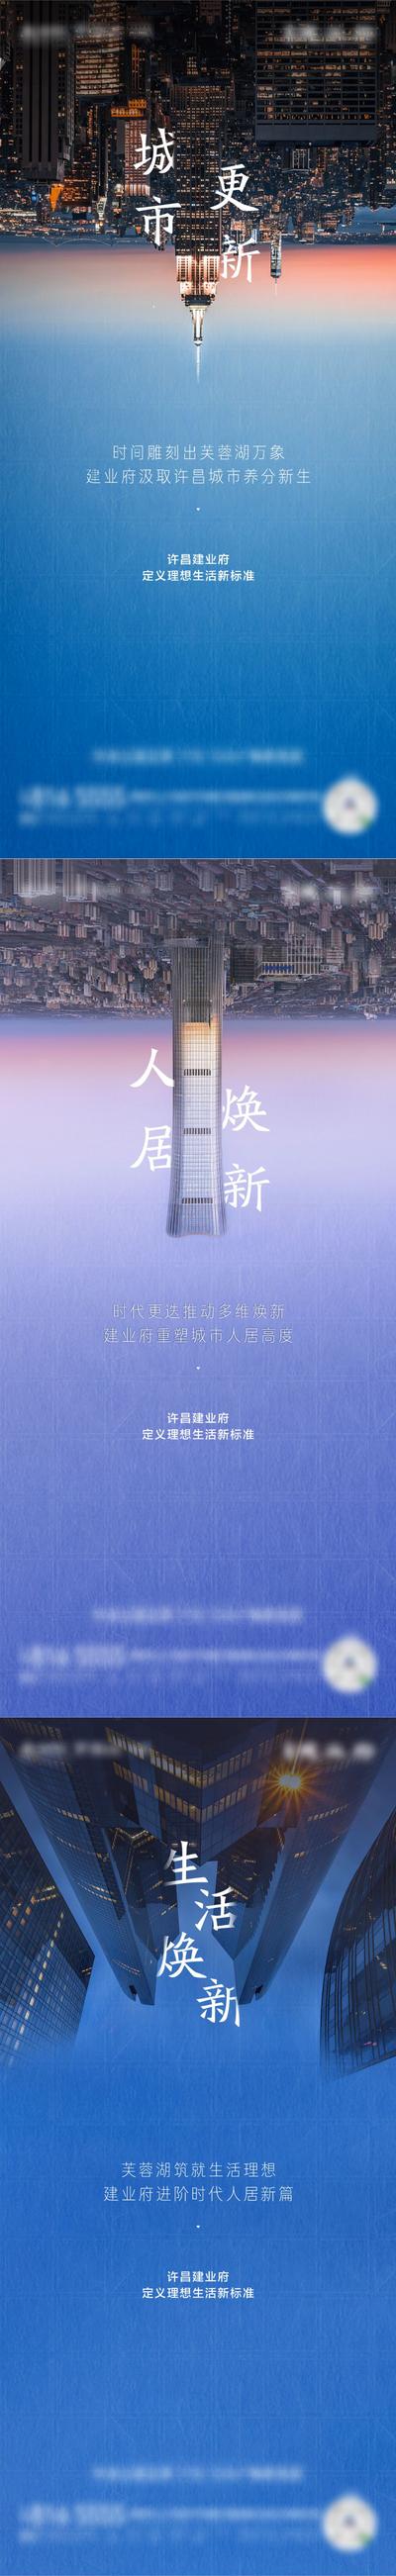 南门网 广告 海报 地产 圈层 地标 建筑 城市 系列